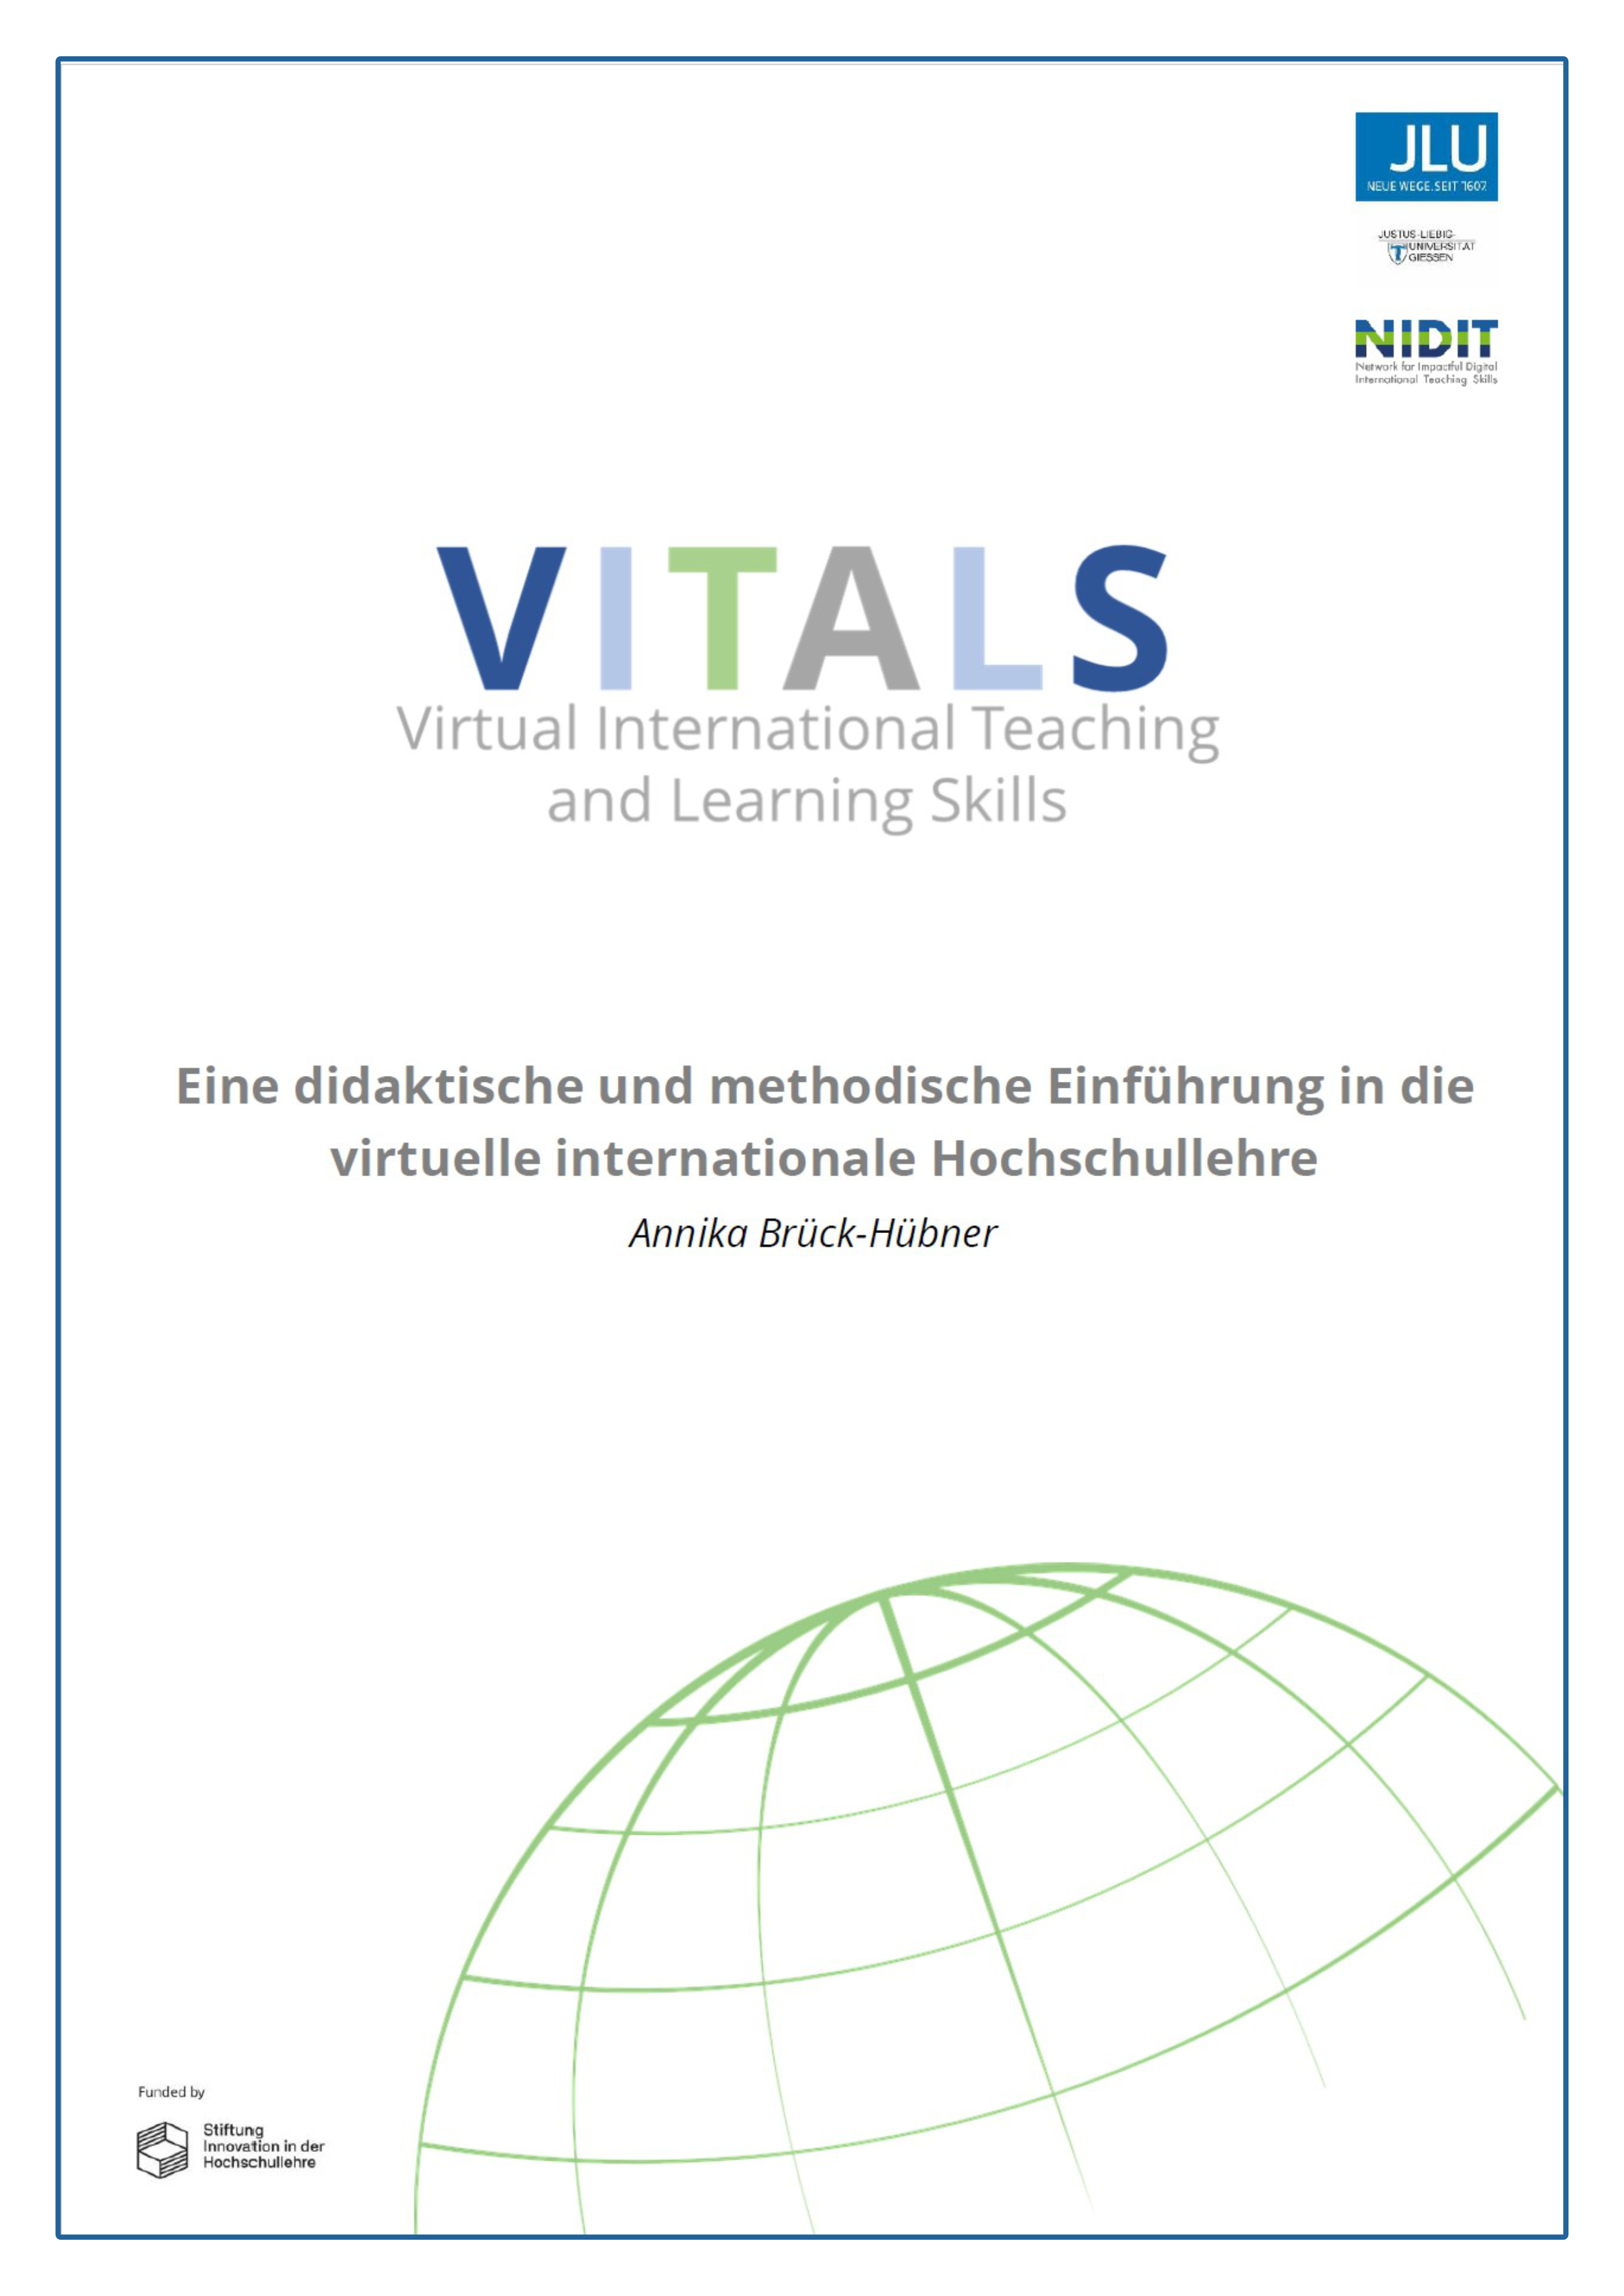 VITALS: Eine didaktische und methodische Einführung in die virtuelle internationale Hochschullehre auf Deutsch